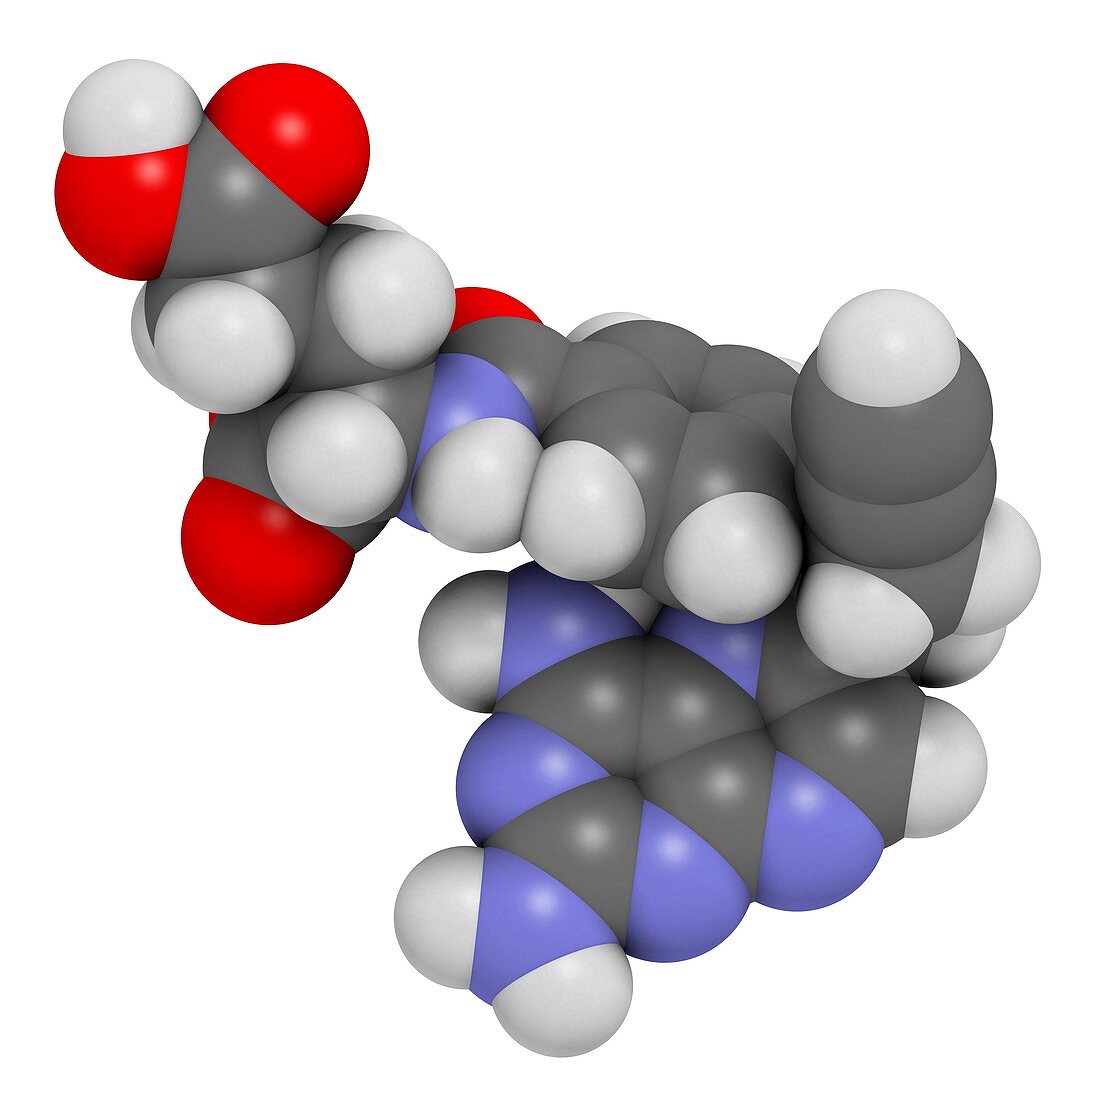 Pralatrexate cancer drug molecule